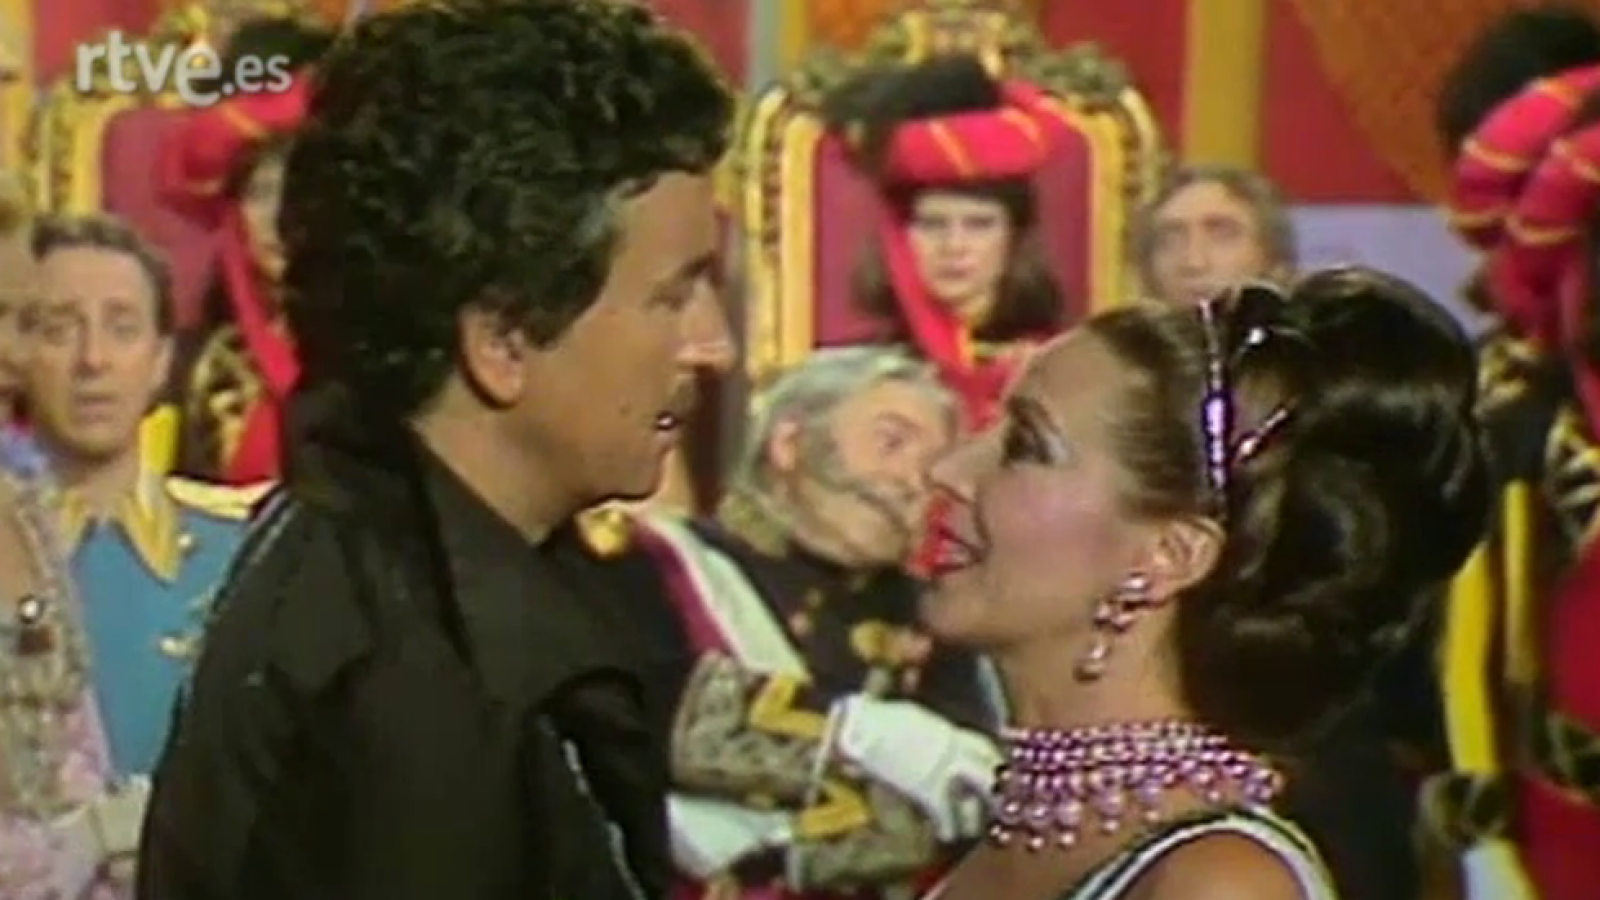 La comedia musical española - La hechicera en palacio